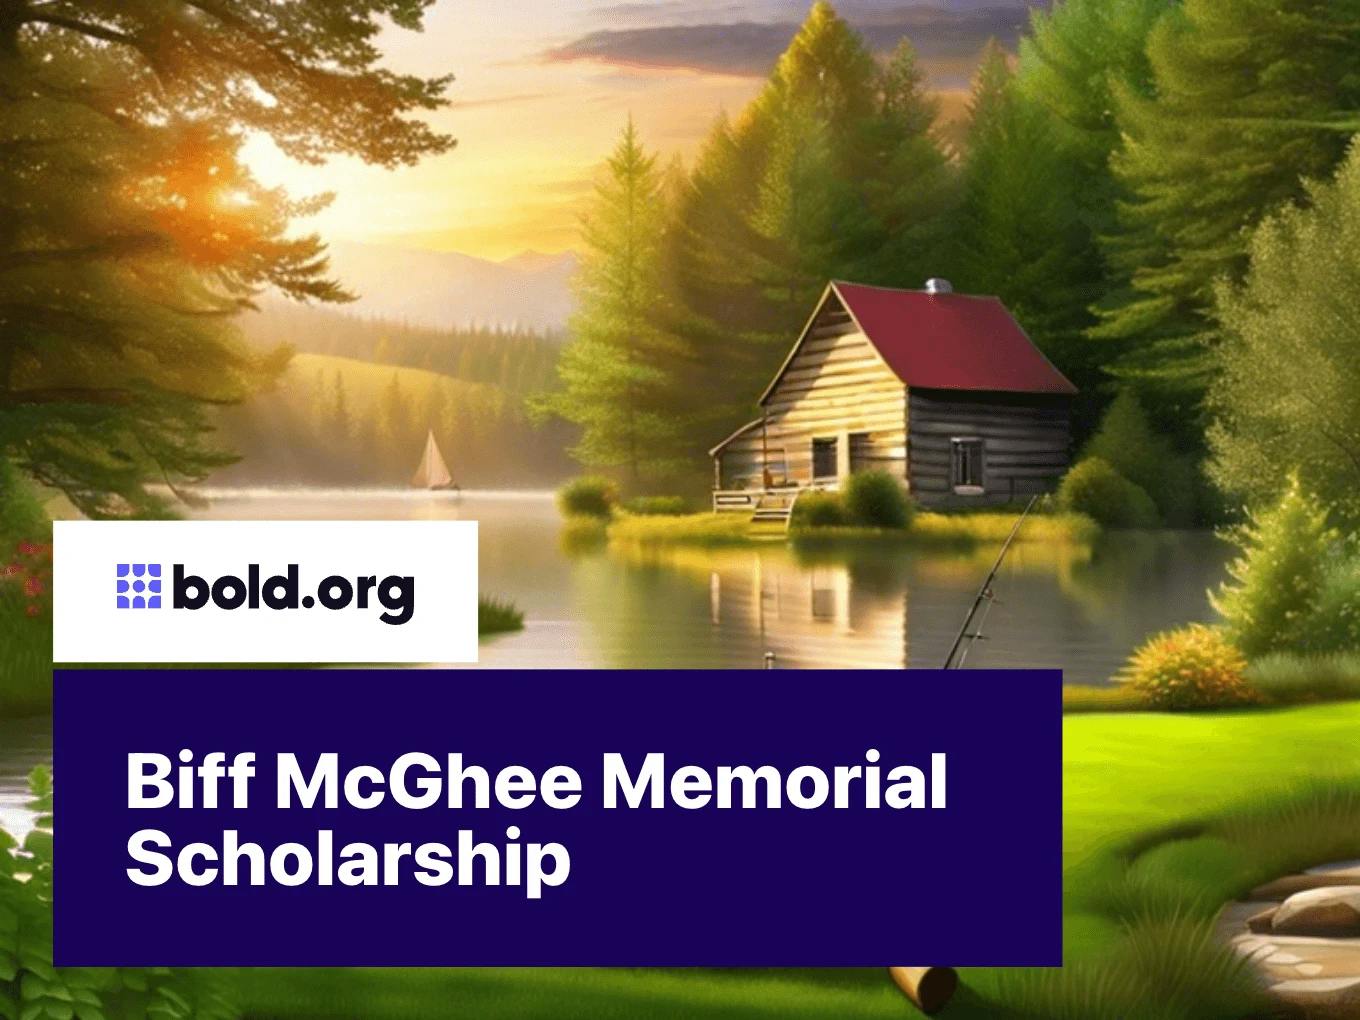 Biff McGhee Memorial Scholarship